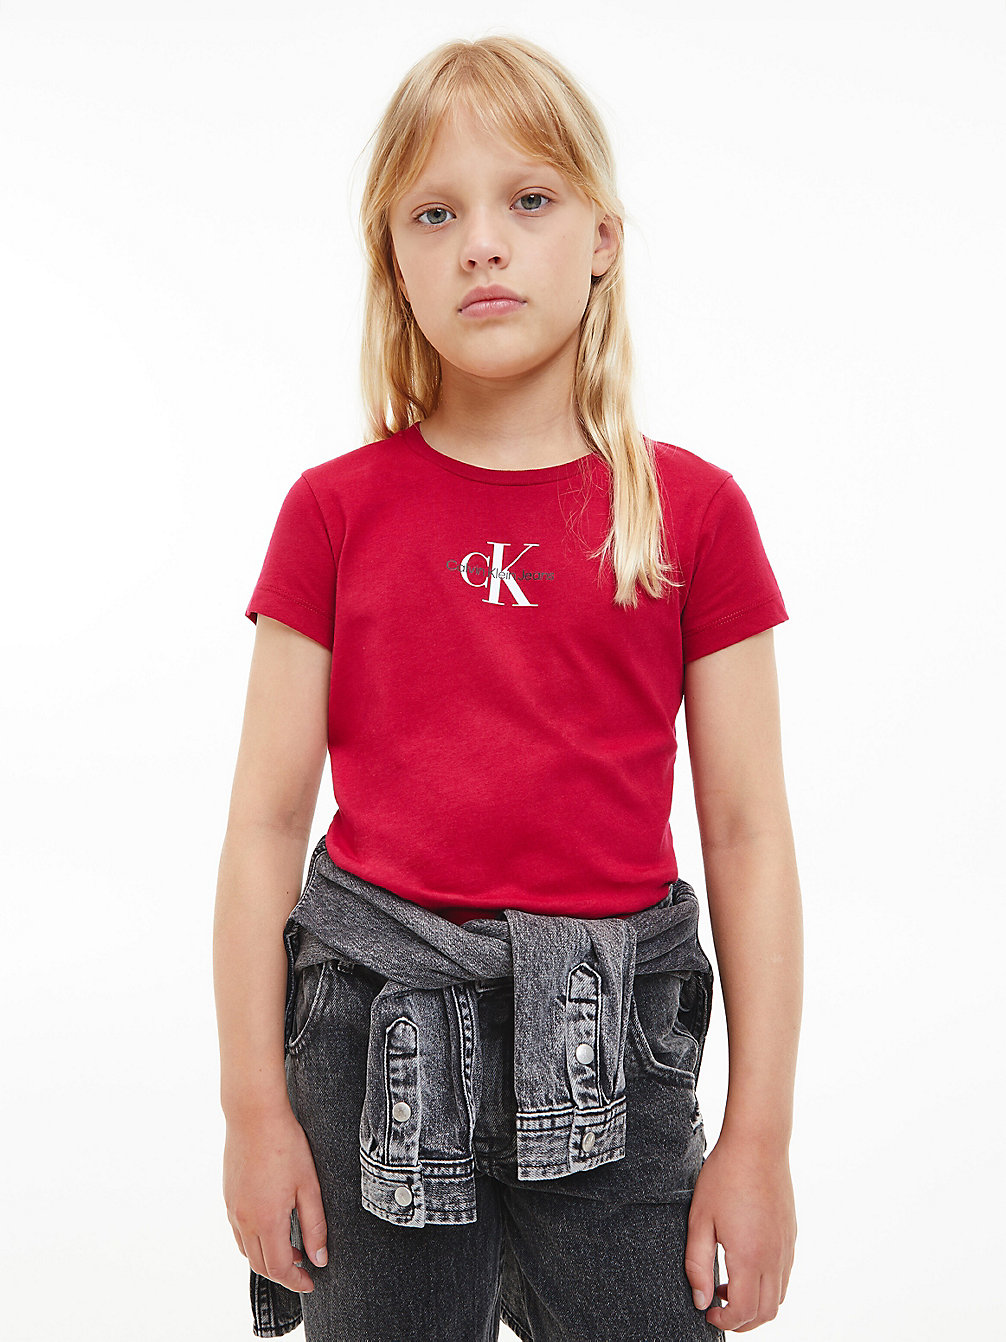 ROYAL BERRY > Wąski T-Shirt Z Bawełny Organicznej > undefined girls - Calvin Klein